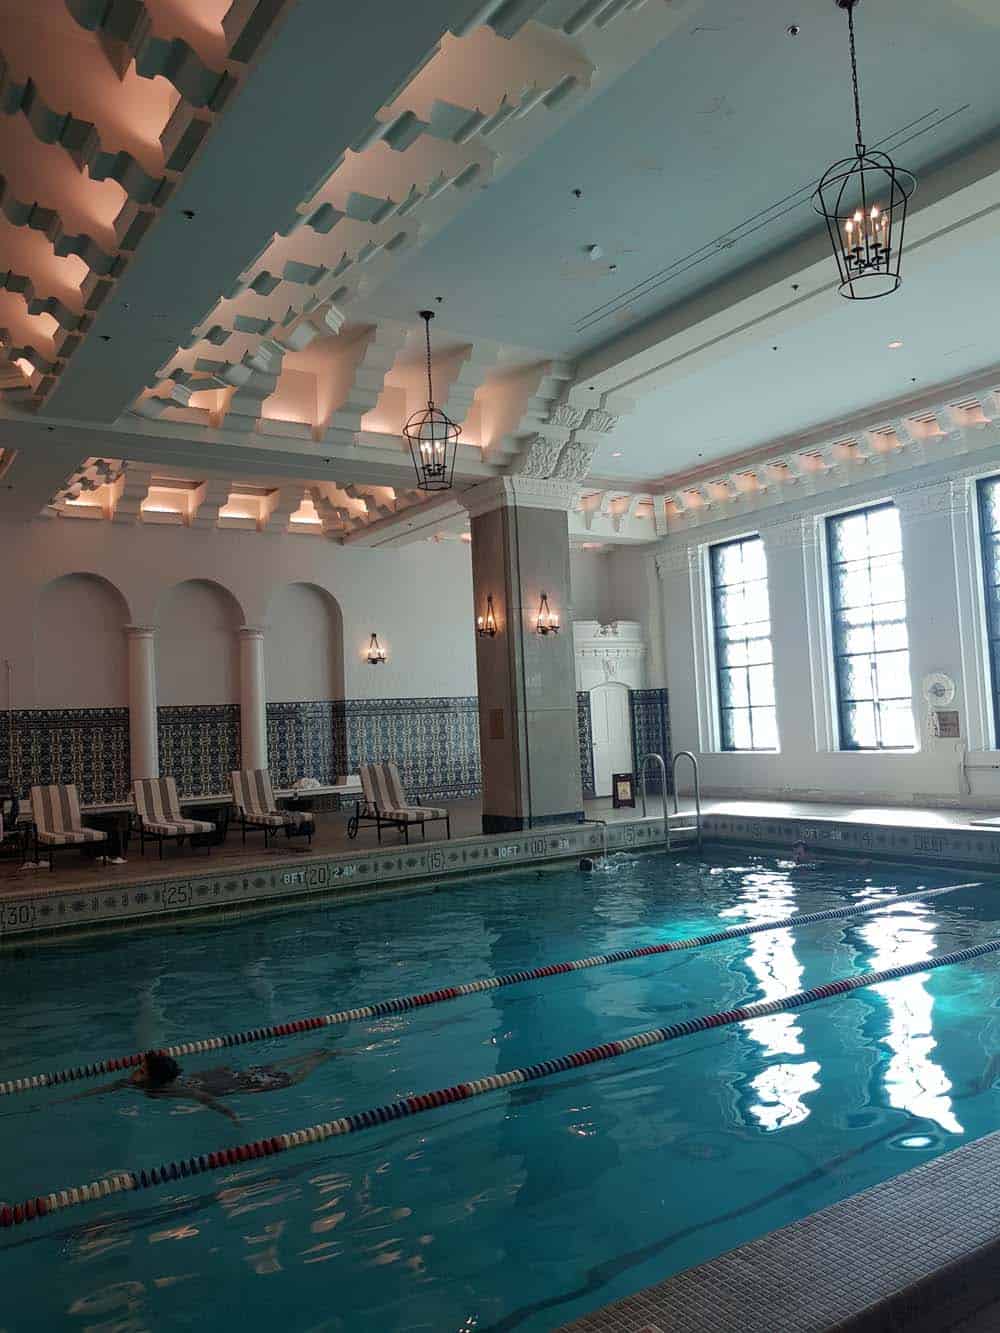 Das Schwimmbad im Hotel „InterContinental“ bewahrt die Erinnerung an Johnny Weissmüller und Esther Williams 